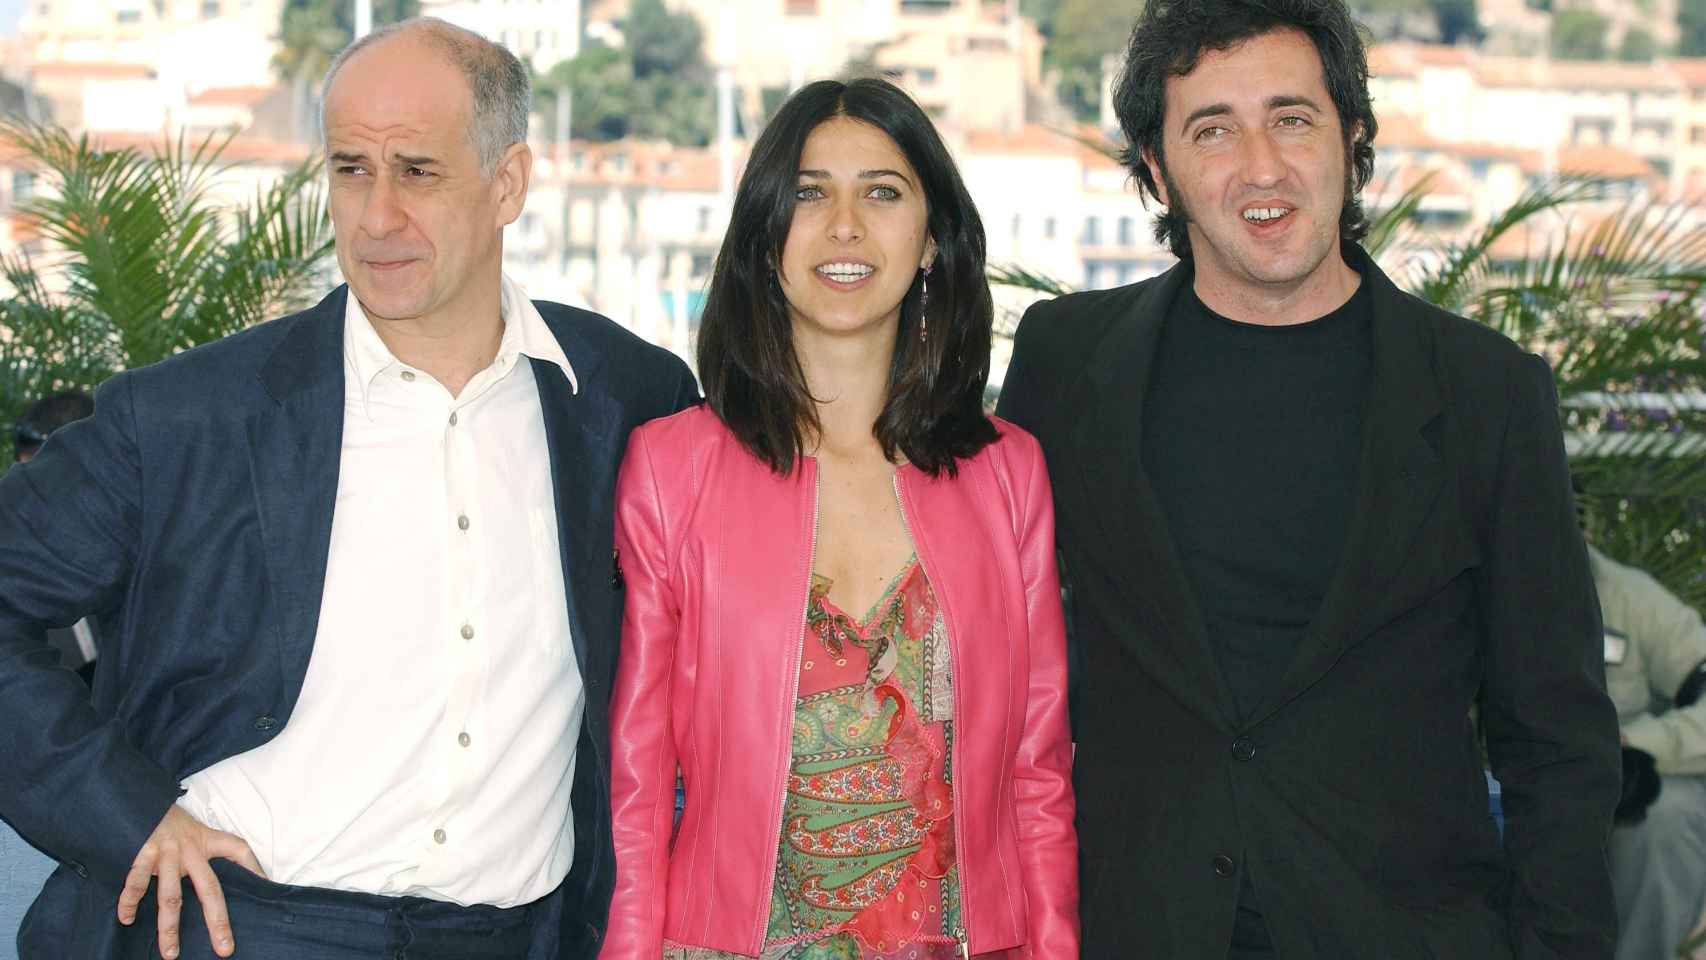 La relación entre Sorrentino y Toni Servillo se remonta décadas. Aquí, en Cannes en 2004.